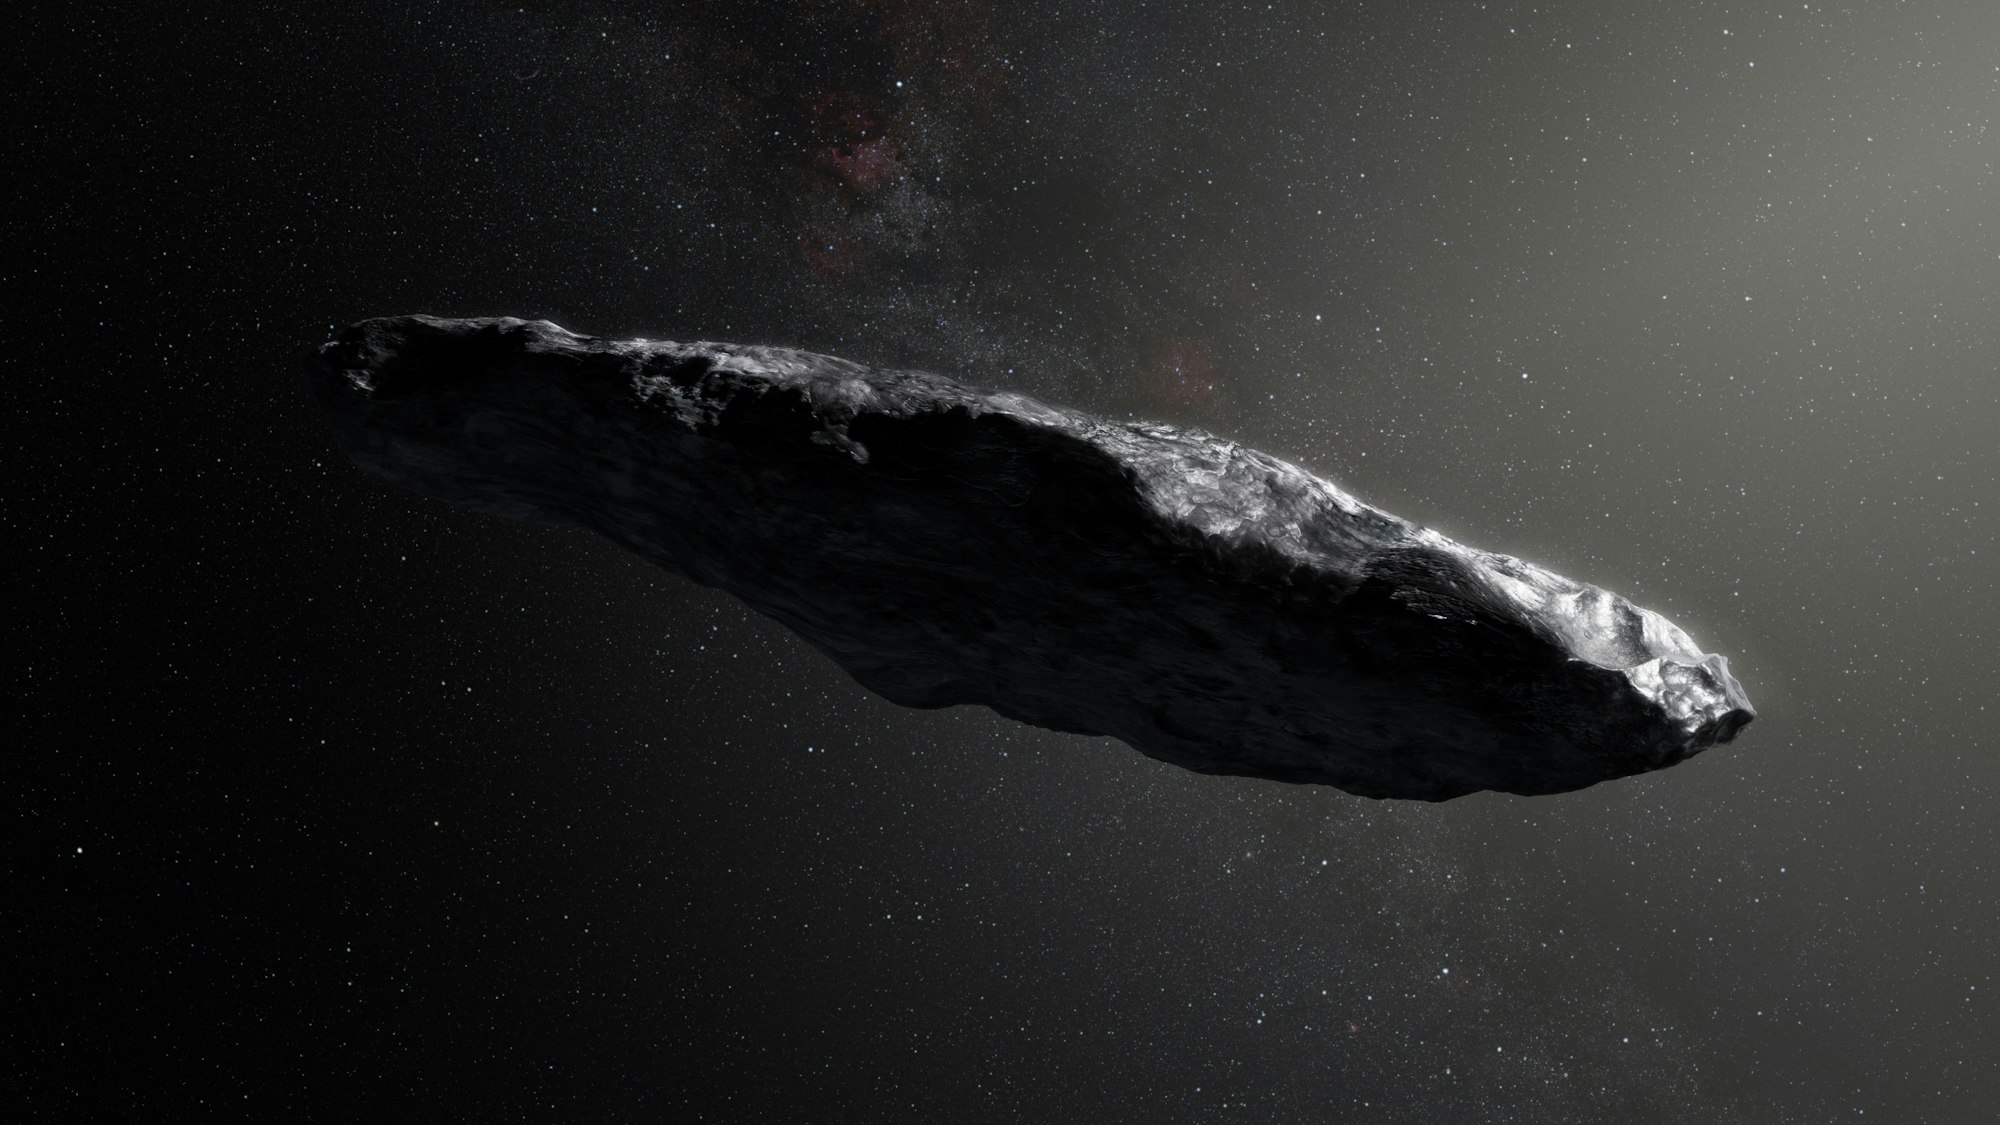 Das Foto aus dem Jahr 2017 zeigt das Flugobjekt „Oumuamua“ im All. Es ist länglich, schwarz und reflektiert das Sonnenlicht.